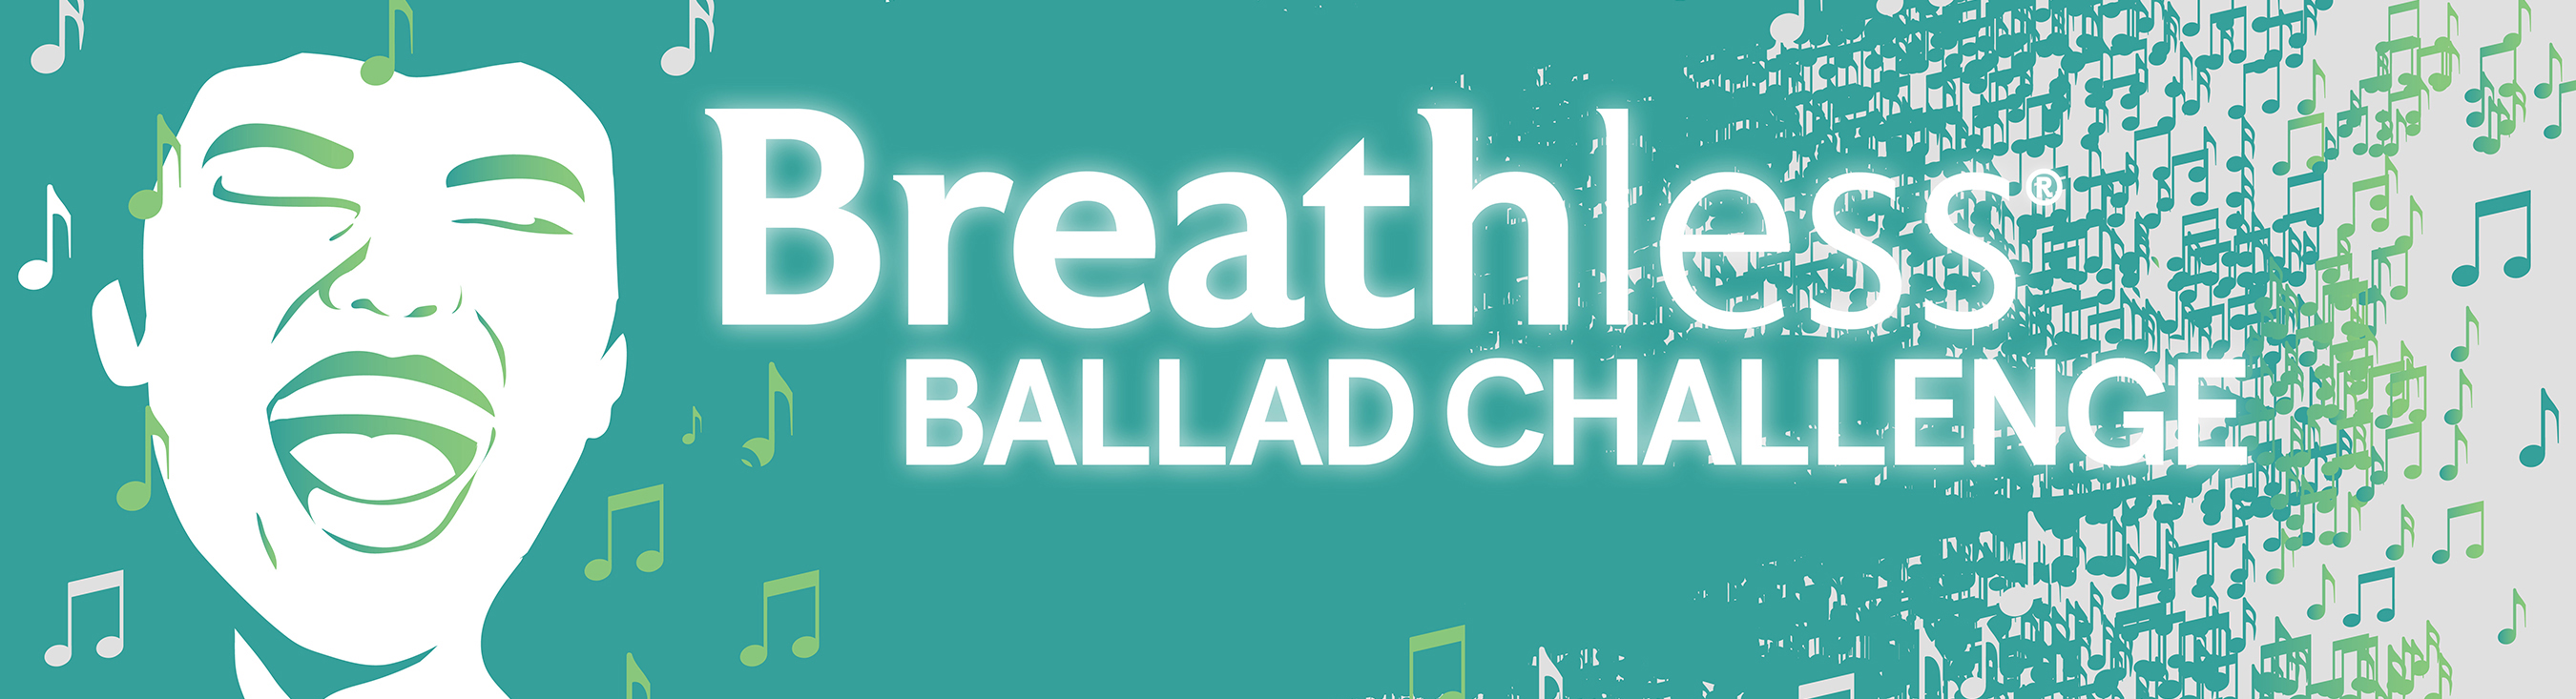 Banner that says "Breathless Ballad Challenge"